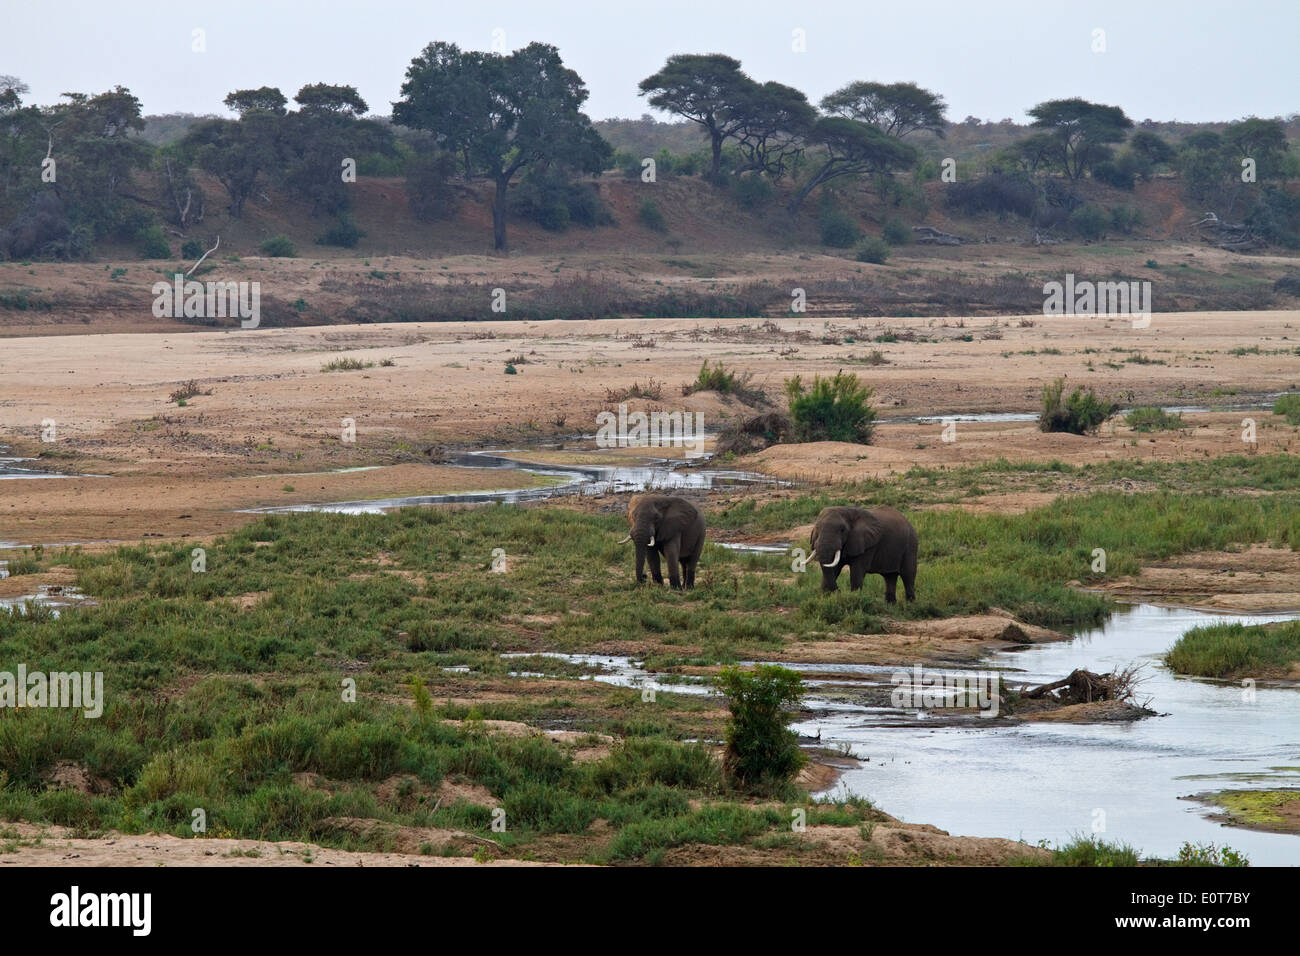 Les éléphants d'Afrique (Loxodonta africana) par la rivière Letaba Letaba au Rest Camp, Kruger National Park, Afrique du Sud Banque D'Images